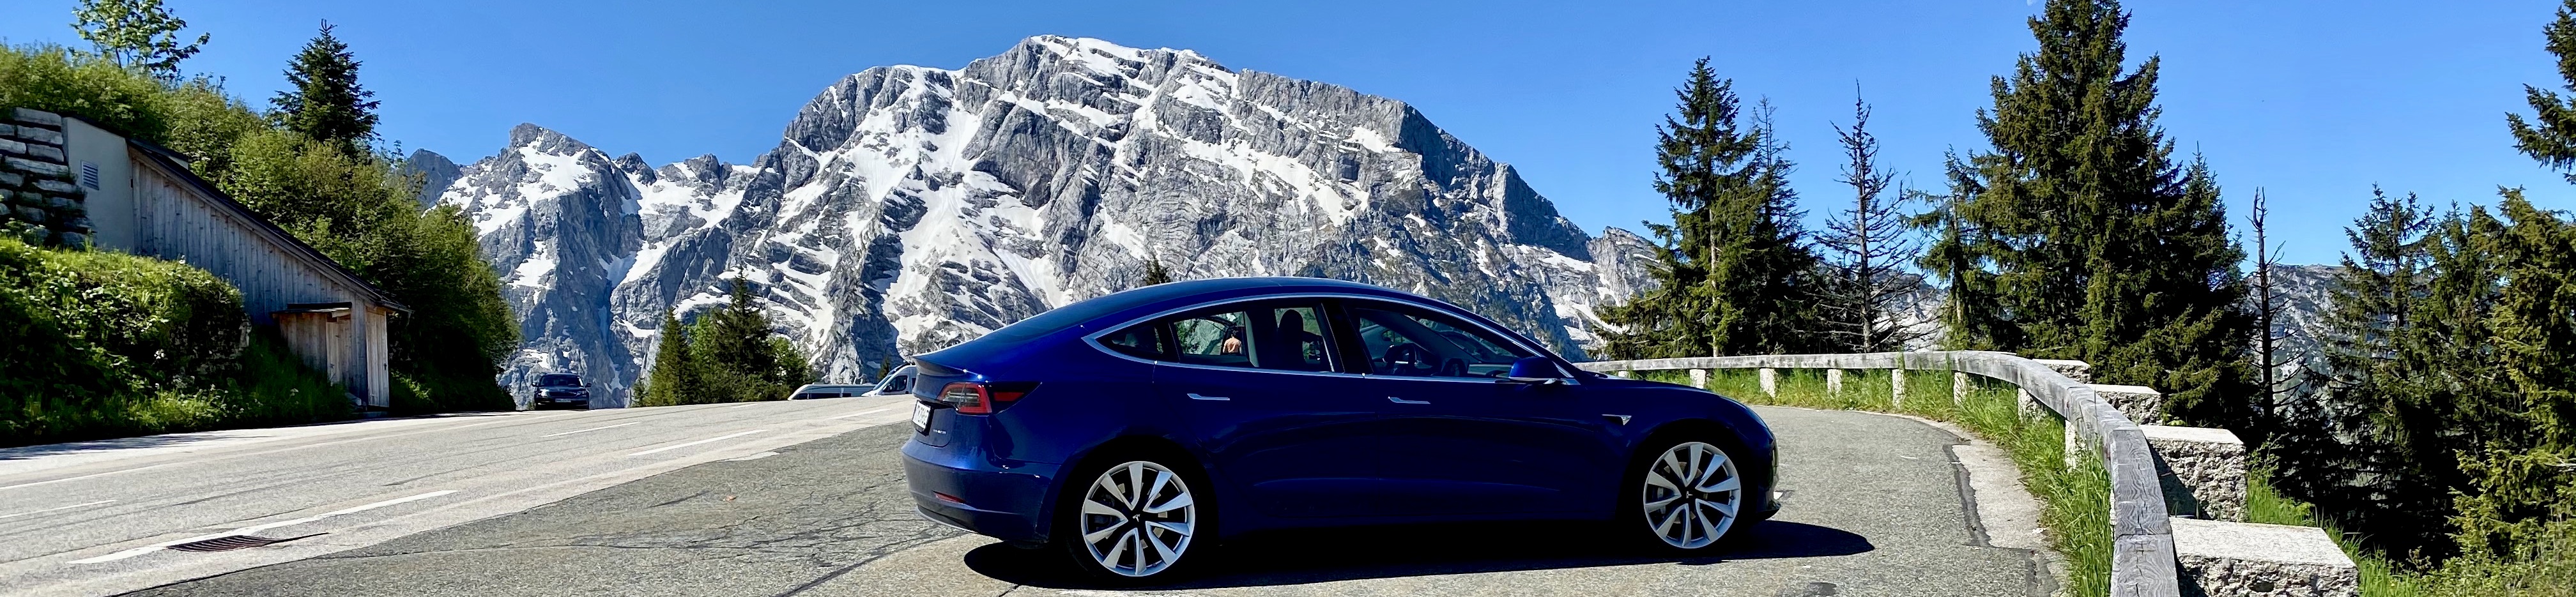 Autotest: Mit dem Tesla Model 3 durch die Welt